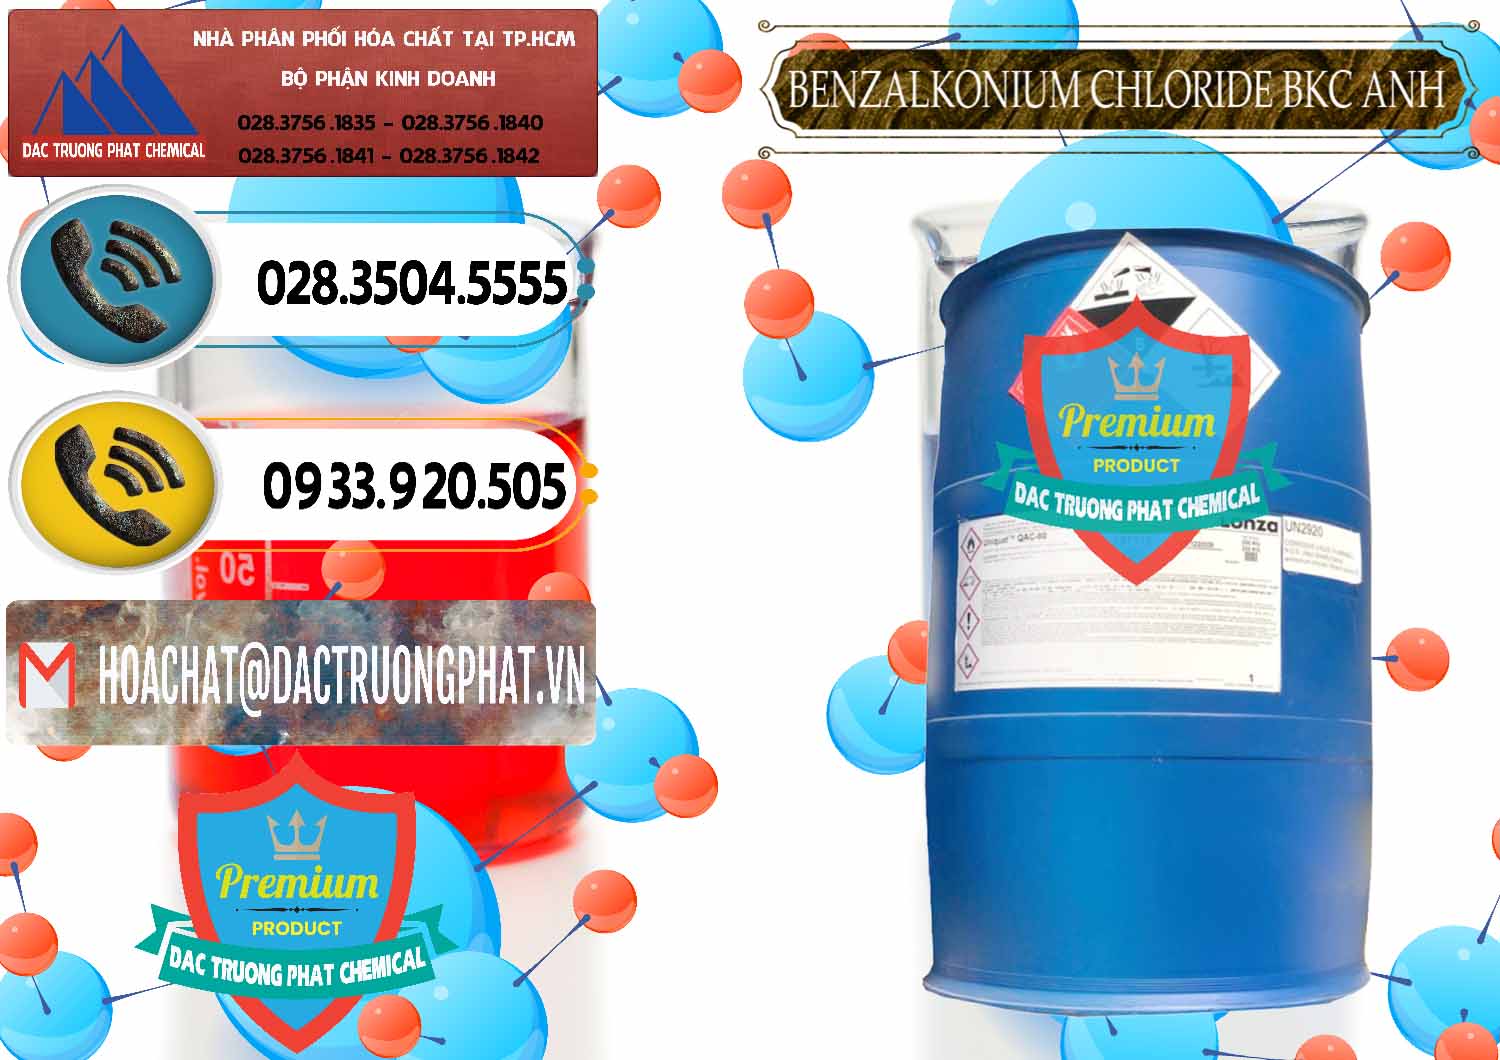 Công ty cung cấp ( bán ) BKC - Benzalkonium Chloride 80% Anh Quốc Uk Kingdoms - 0457 - Nơi bán ( cung cấp ) hóa chất tại TP.HCM - hoachatdetnhuom.vn